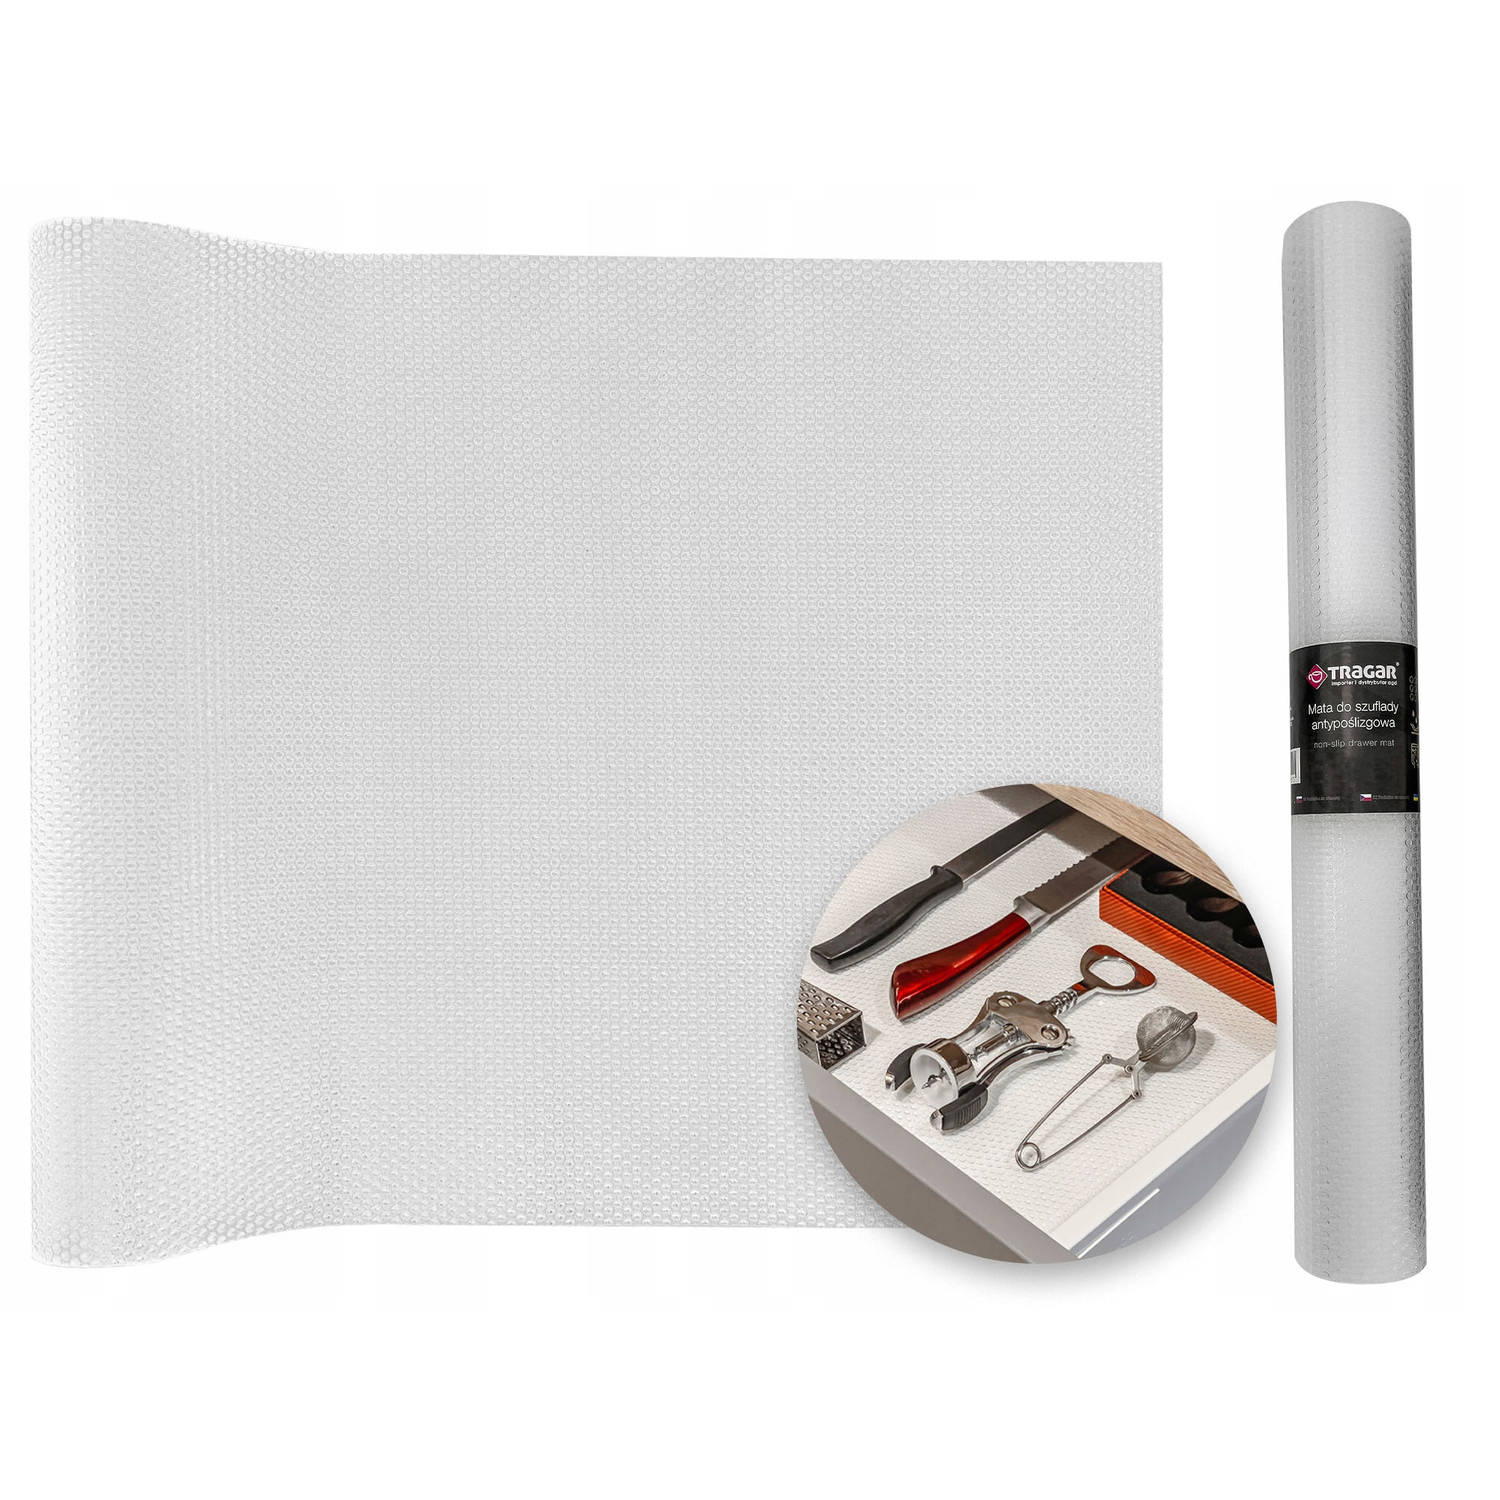 Tragar antislipmat 45 x 300 cm transparant bescherming voor kasten en keukenlade - extra lang - antislip kast - anti slip mat - Lade beschermer